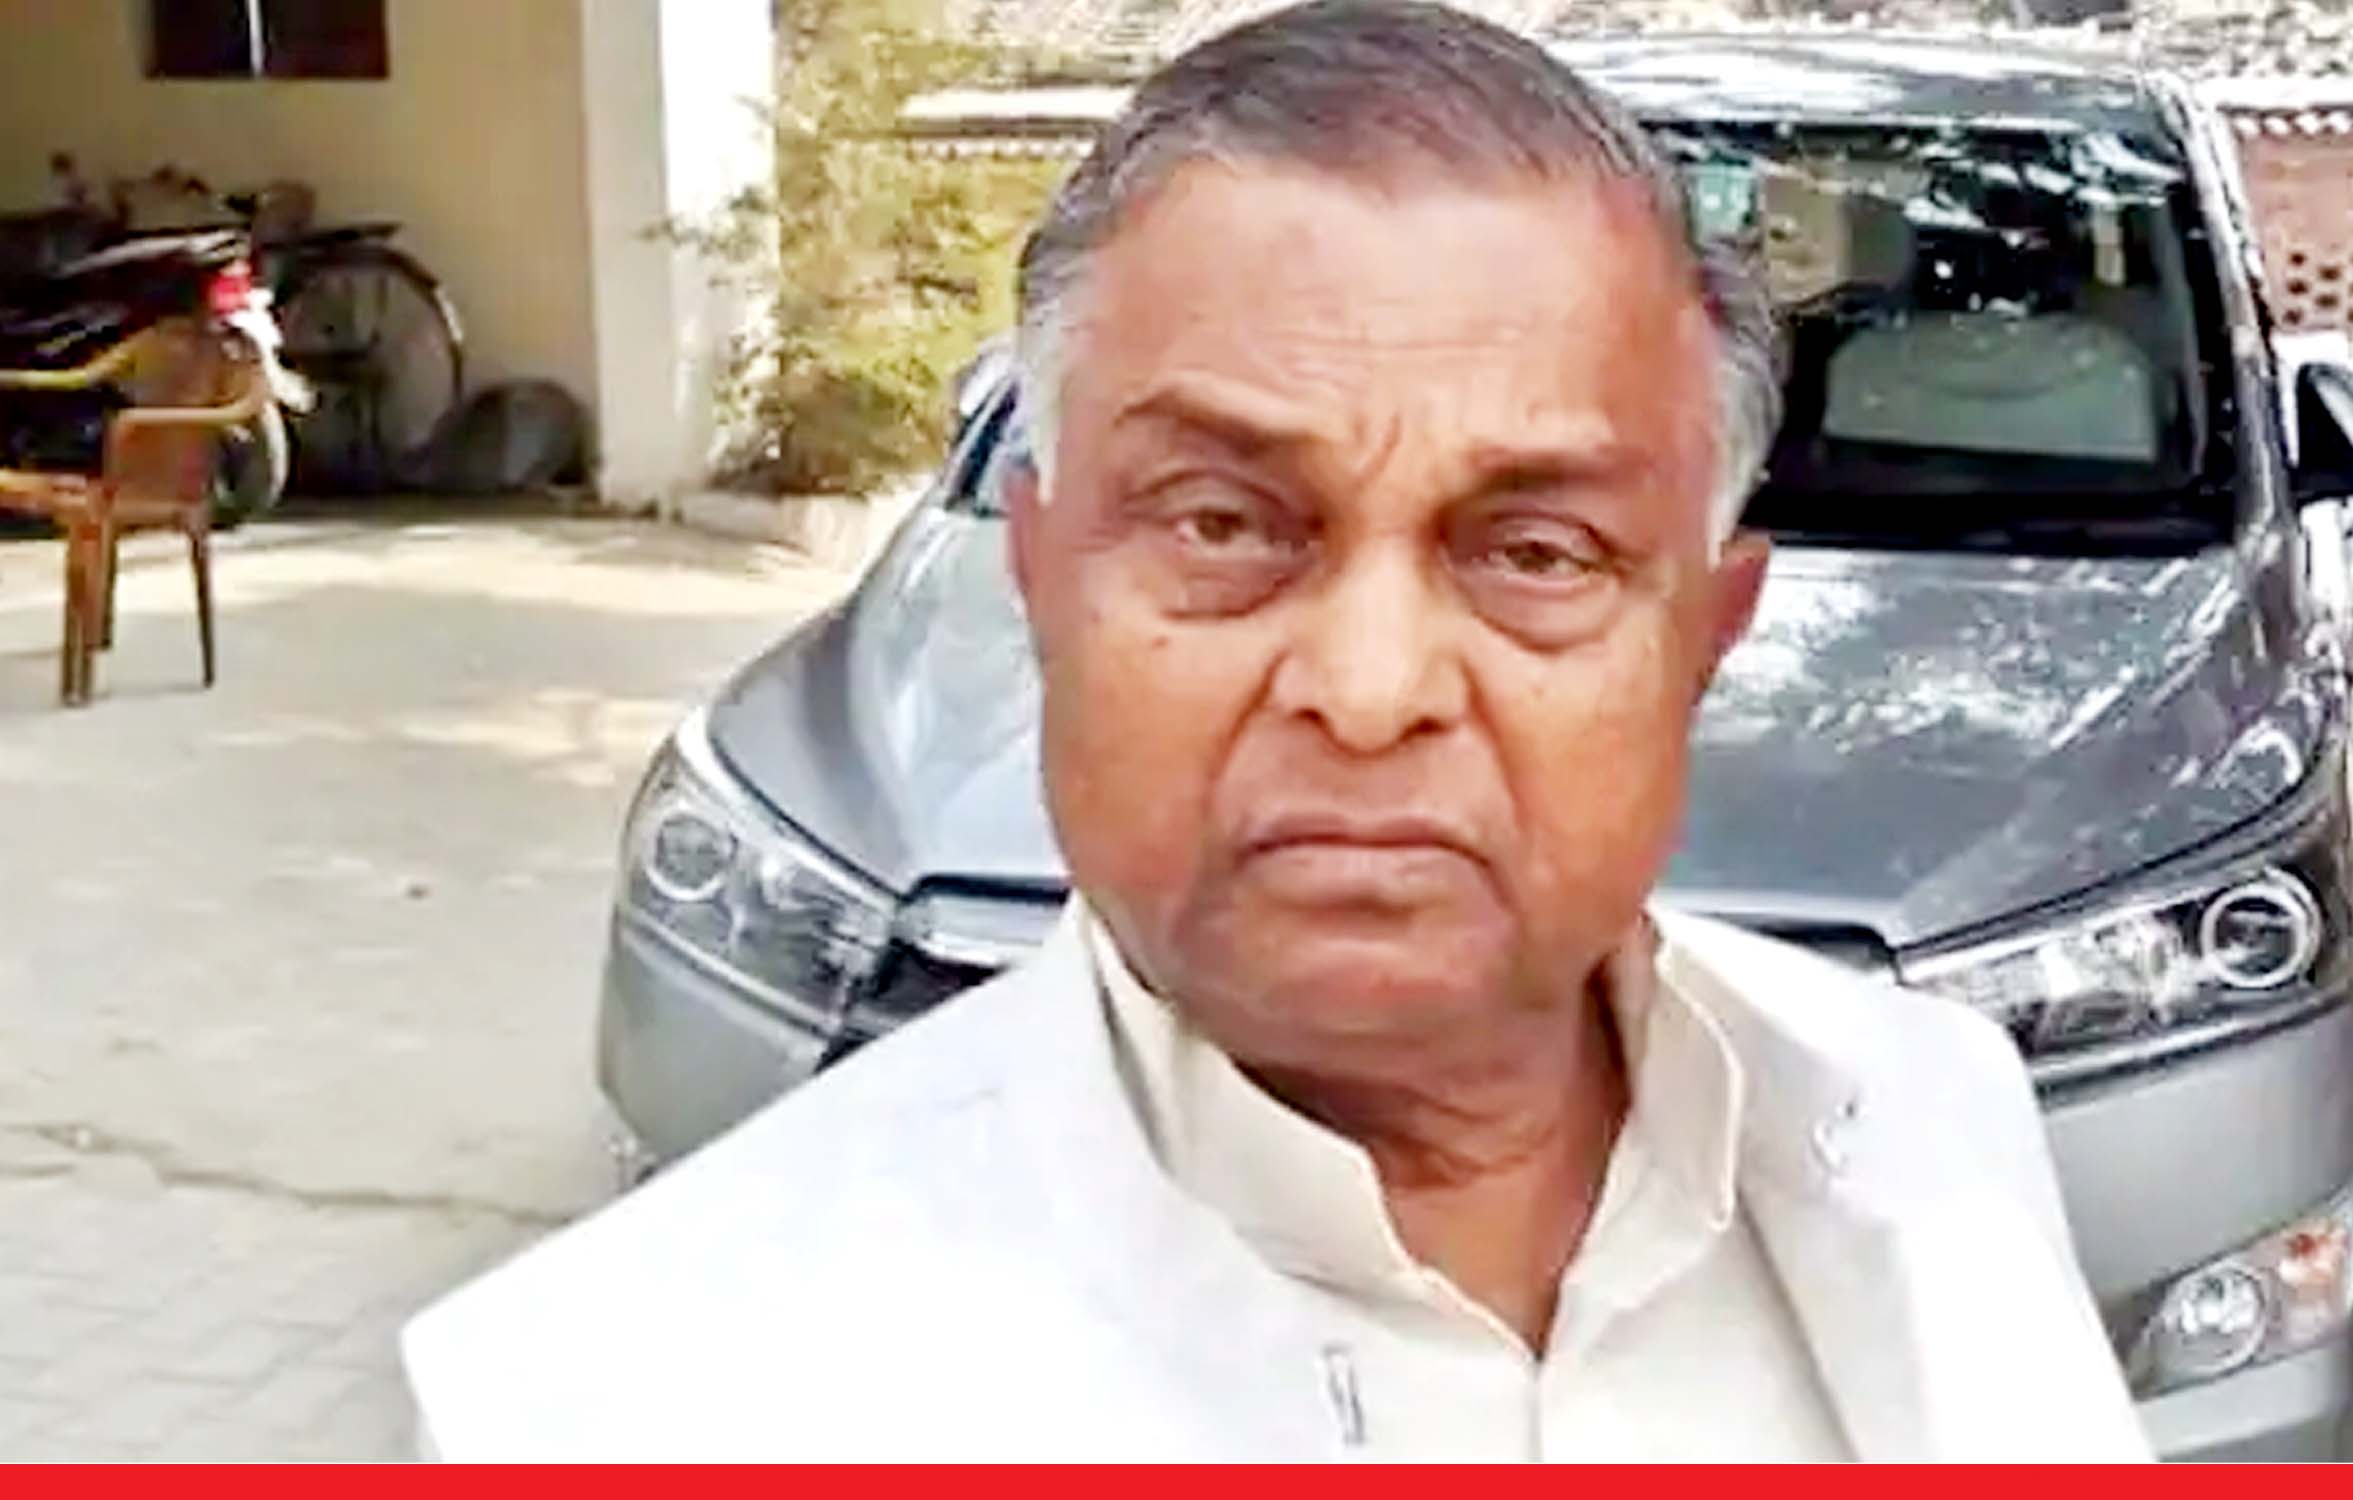 उत्तर प्रदेश: दीदारगंज से बसपा विधायक सुखदेव राजभर का निधन, सीएम योगी ने जताया दुख